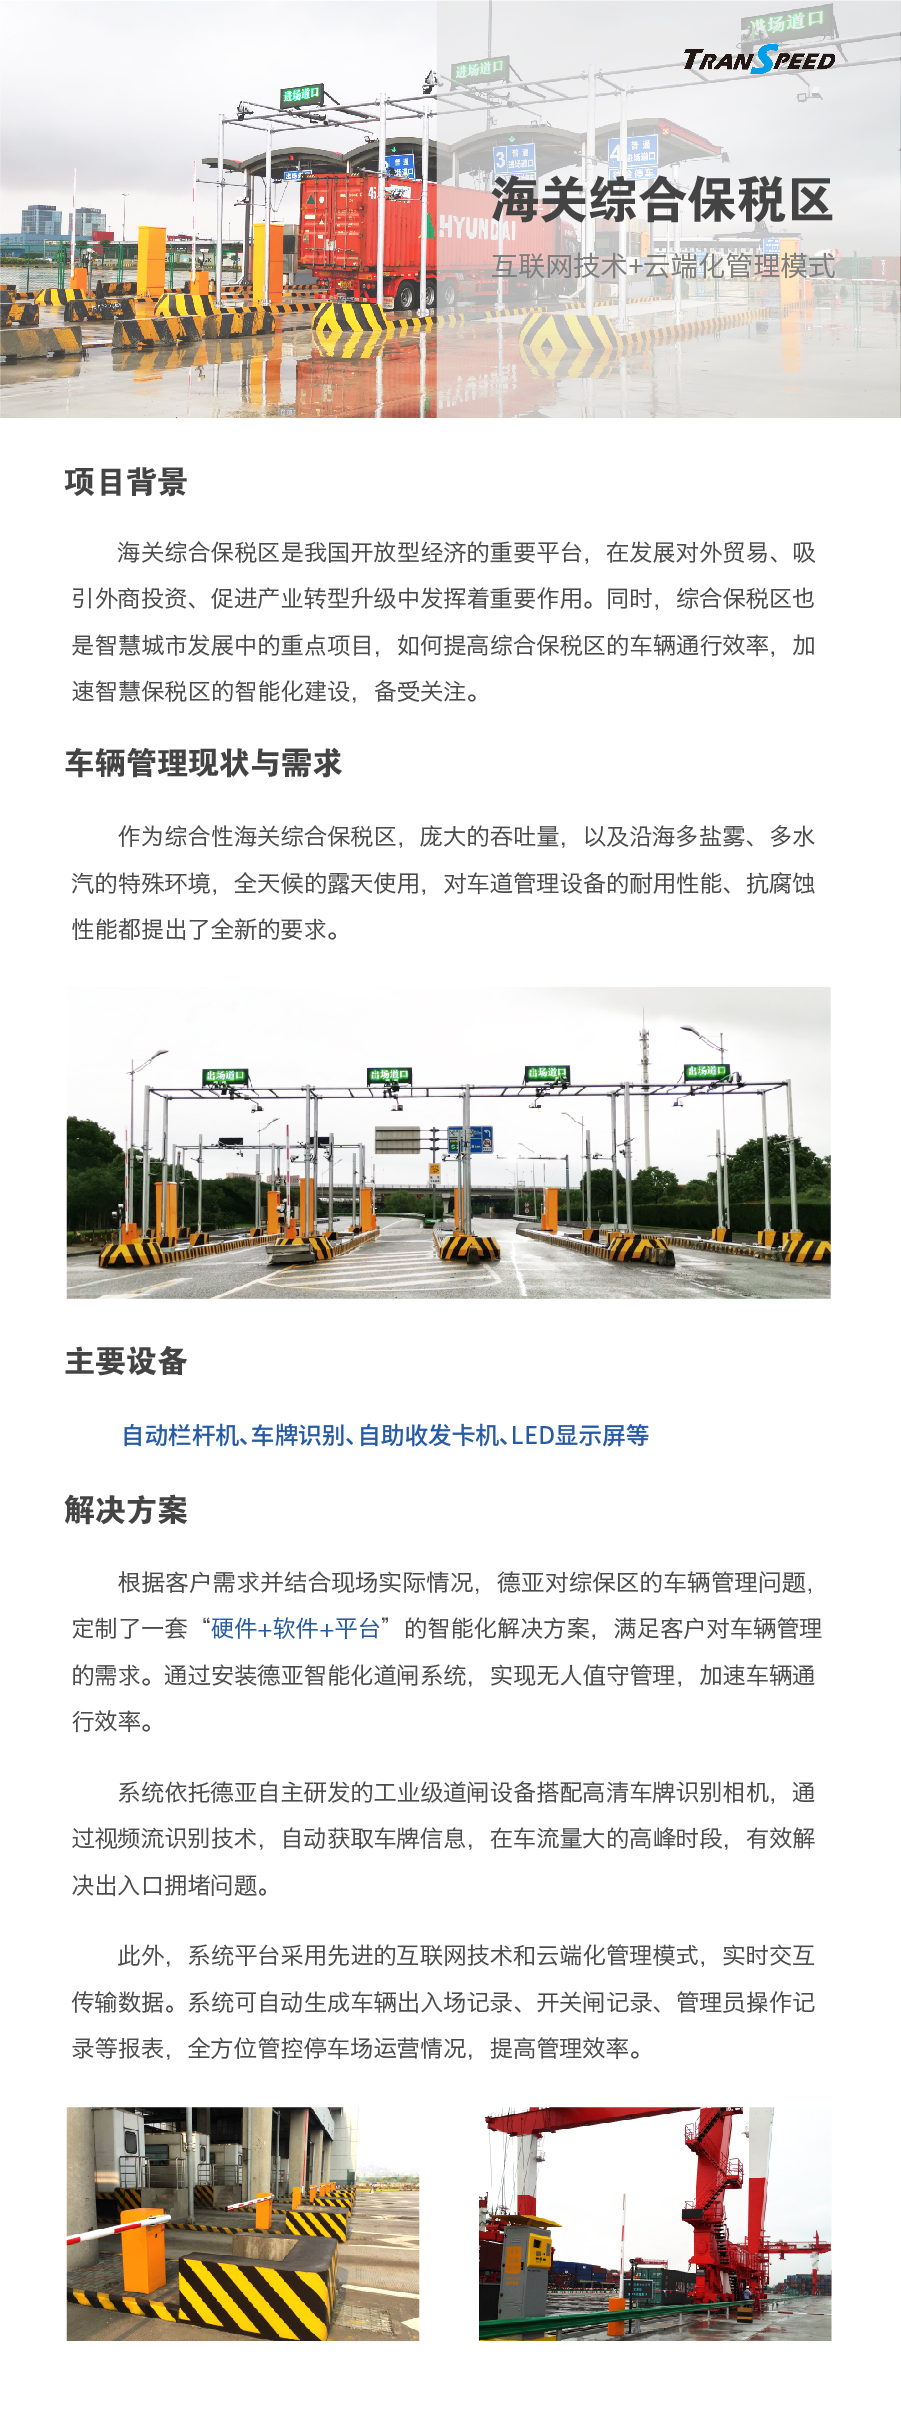 海关综合保税区停车门禁系统项目